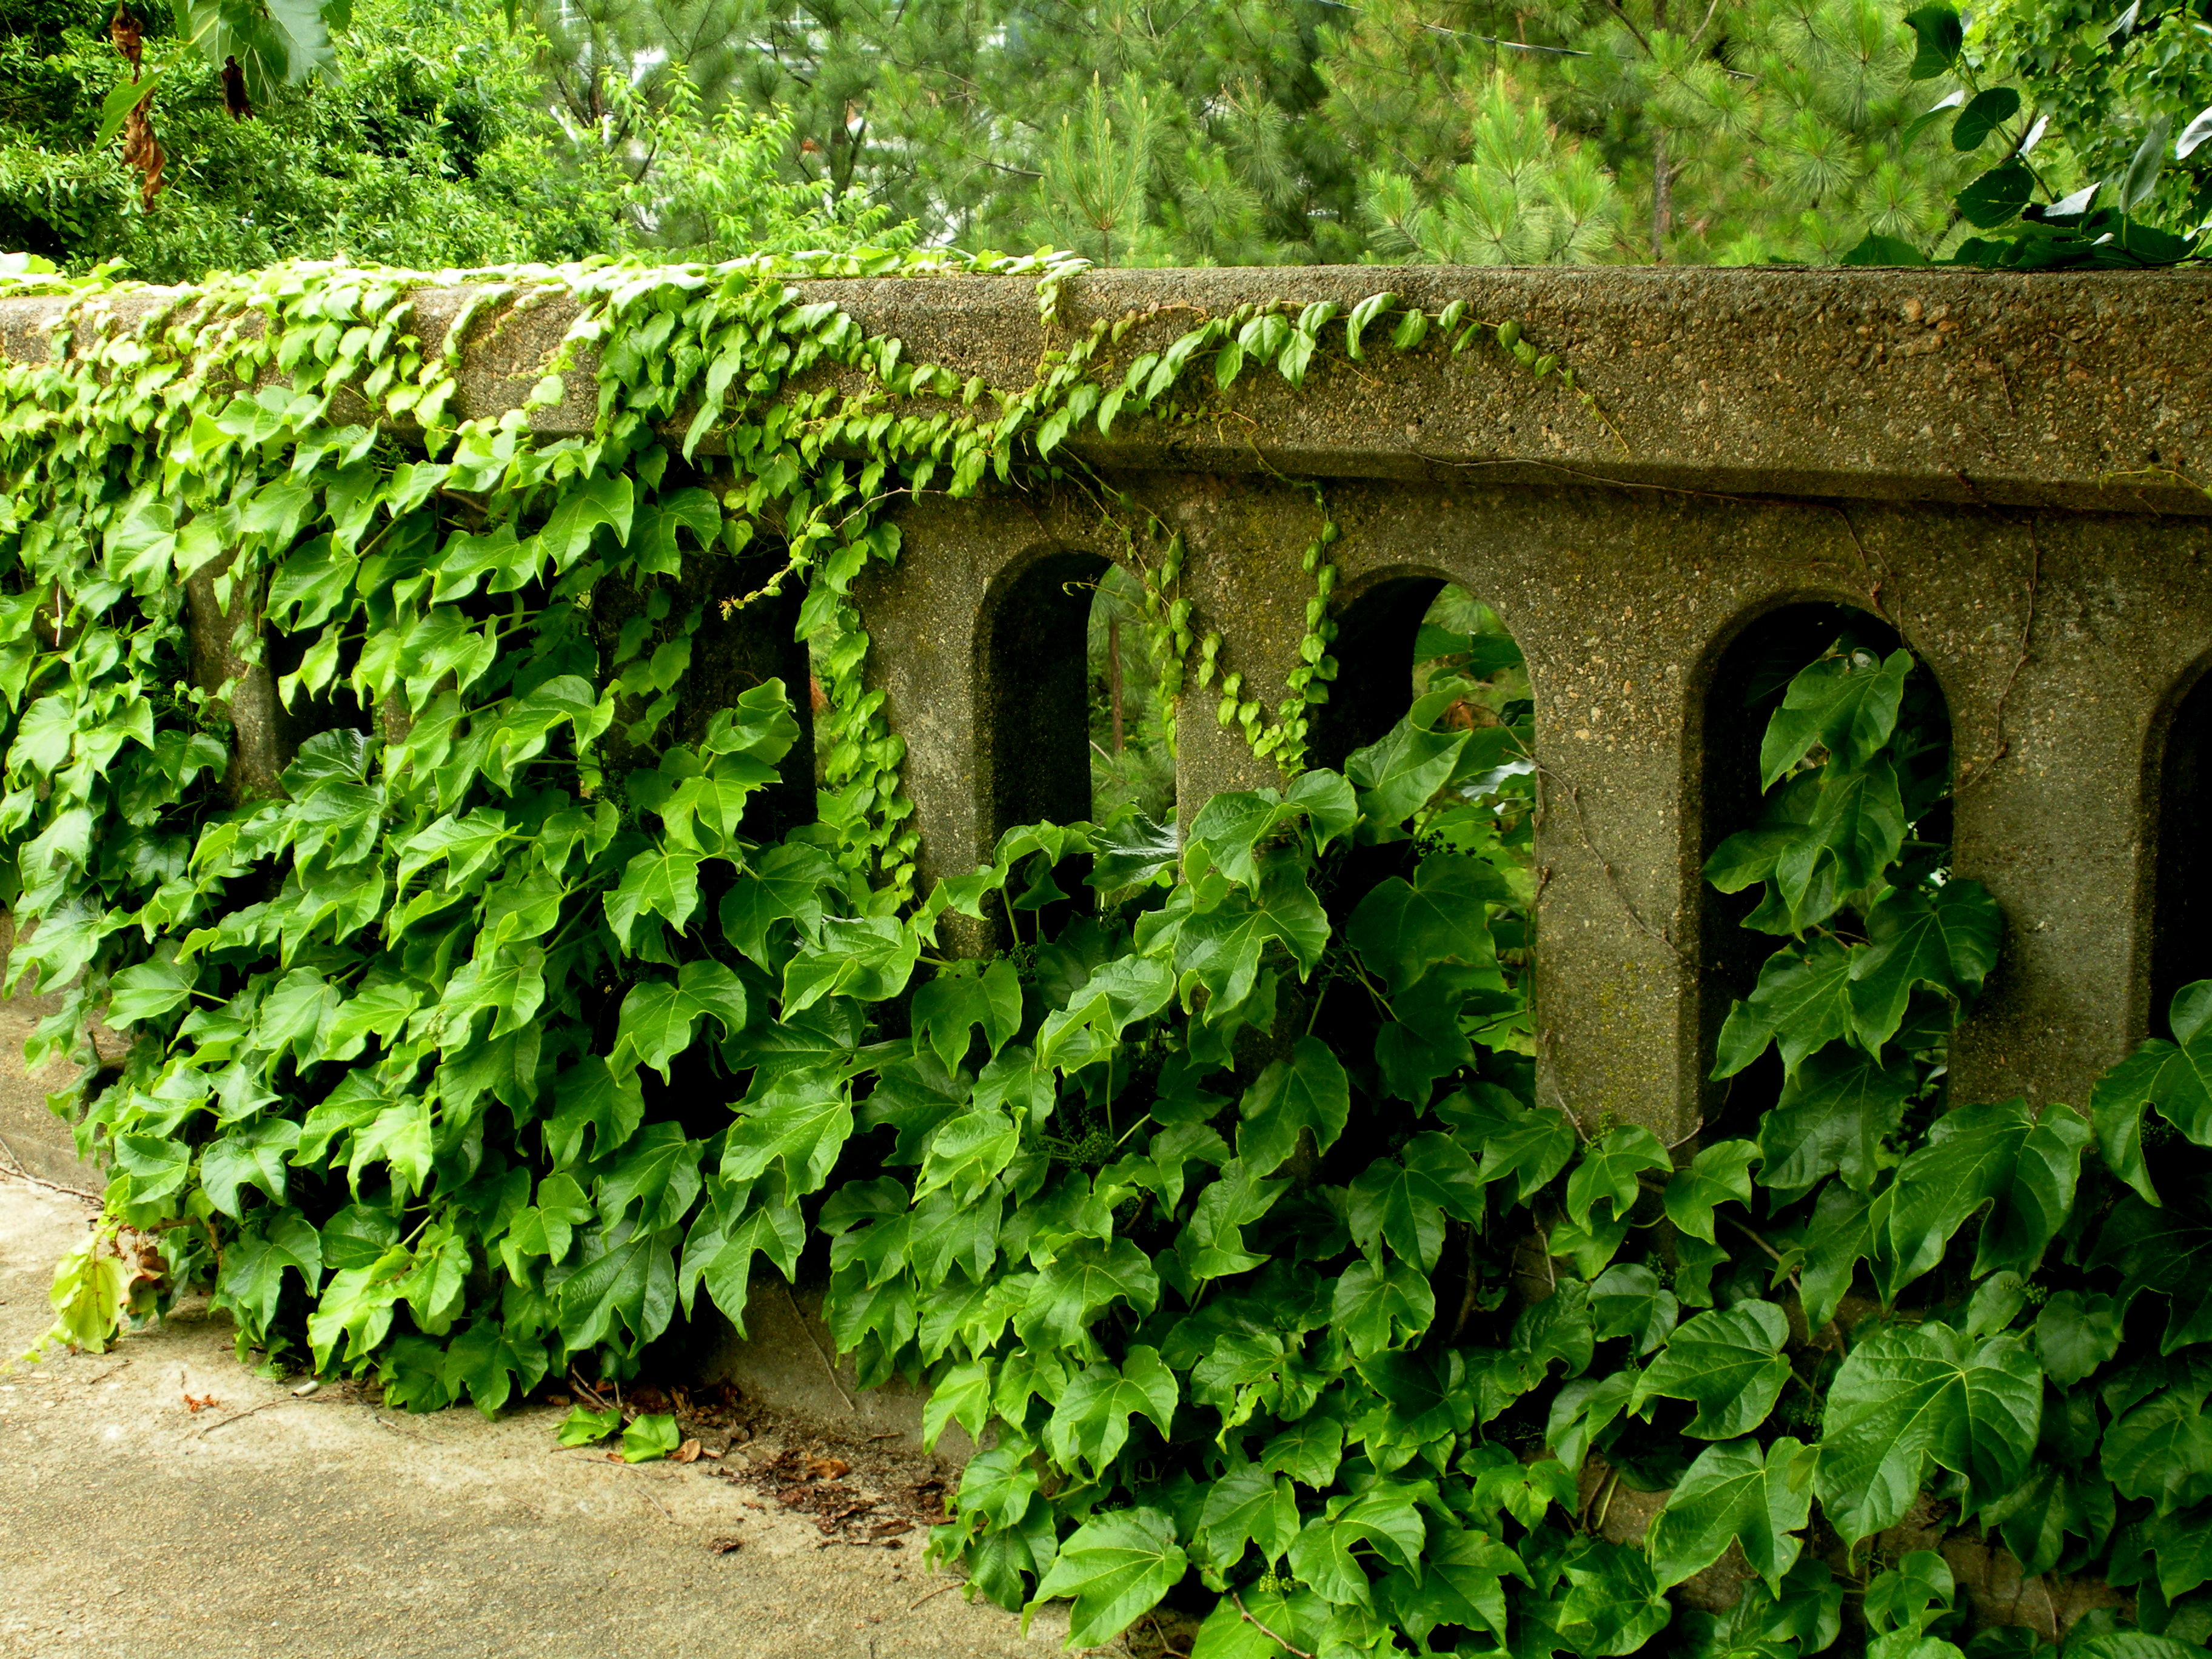 Kudzu vines covering concrete bridge